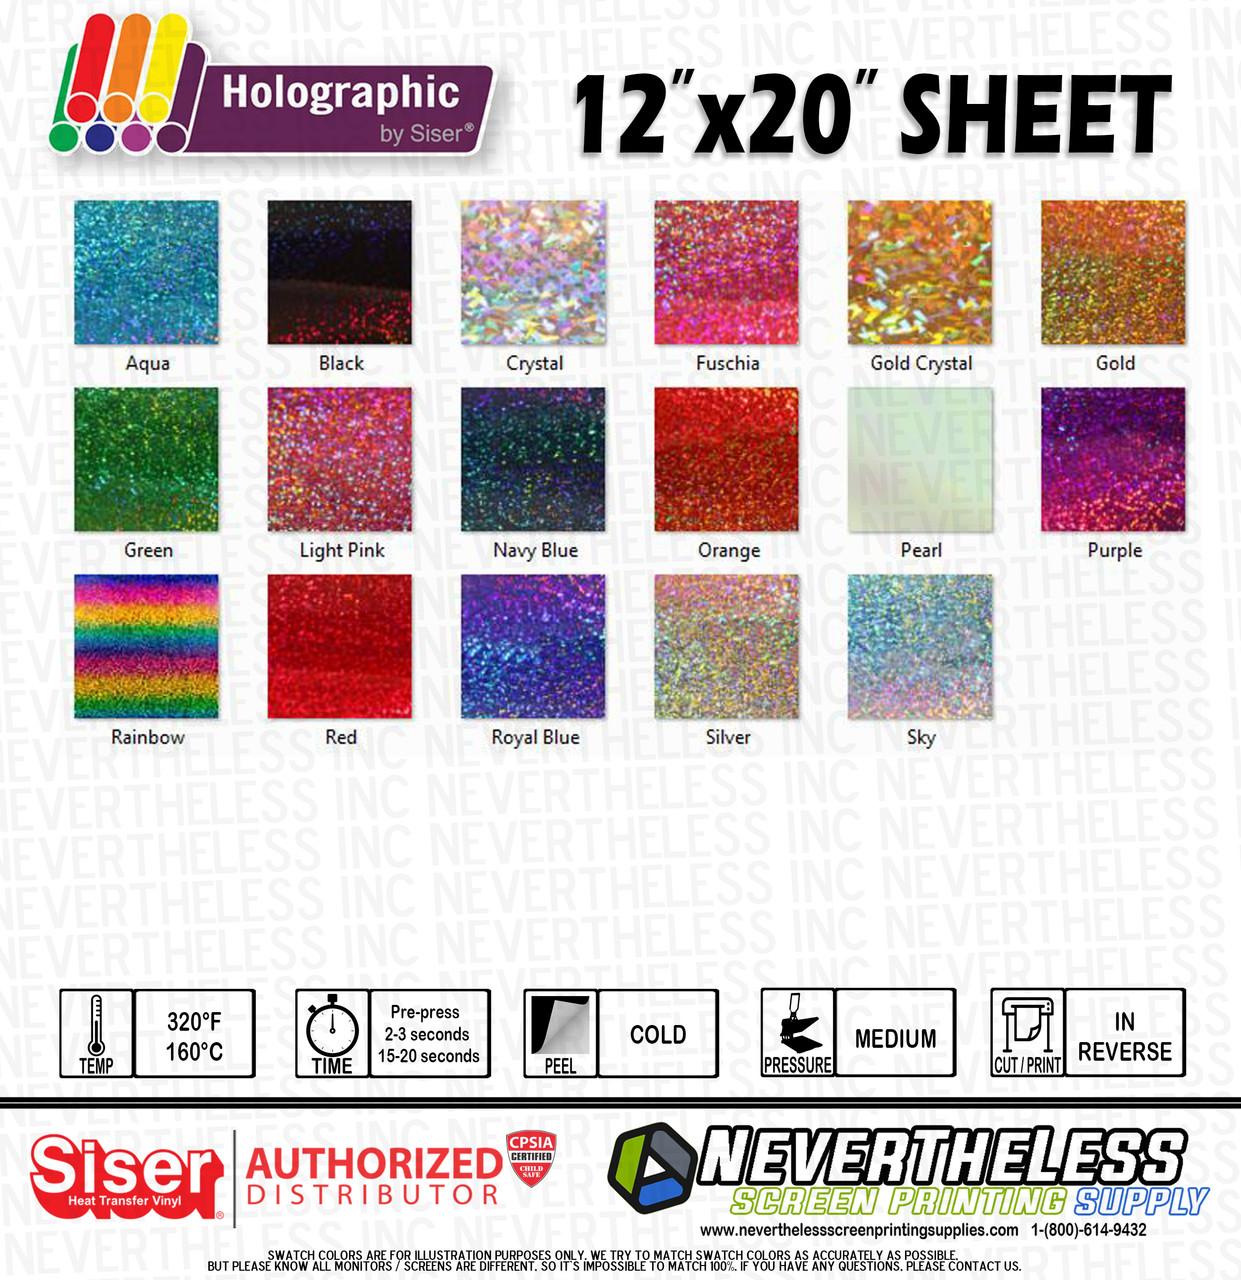 Siser Holographic HTV Heat Transfer Vinyl - 12x20 Sheet